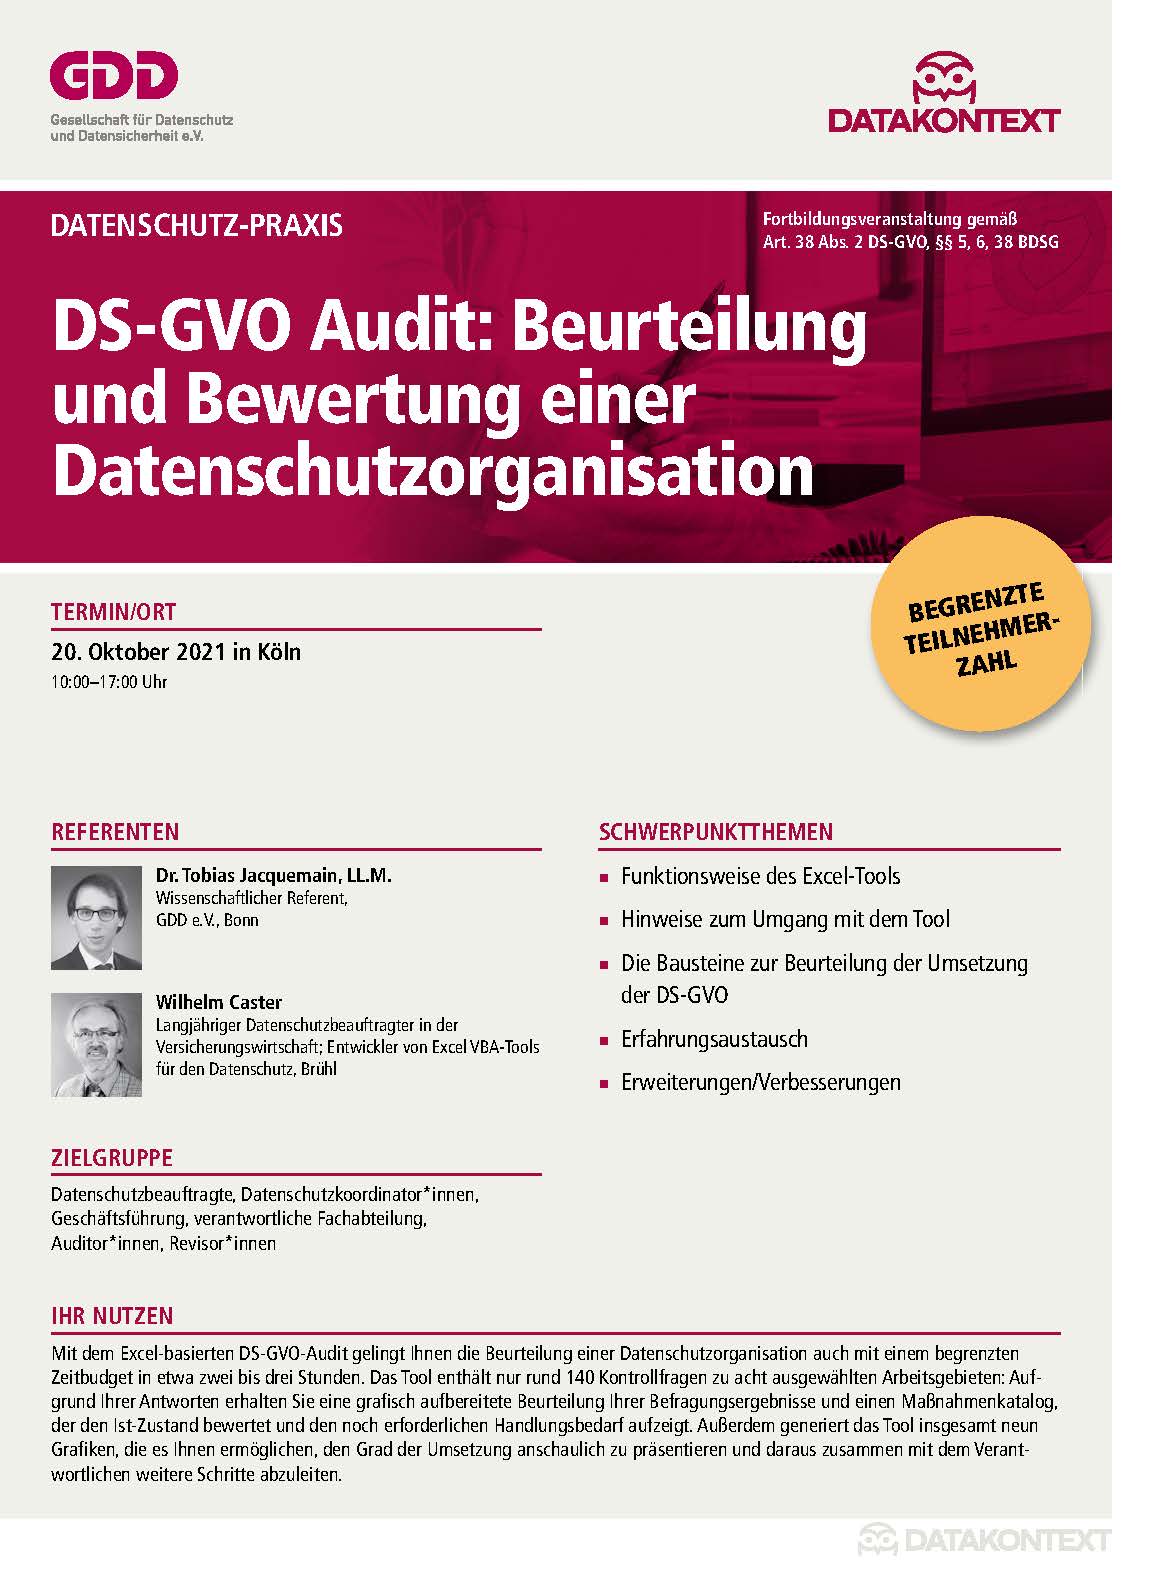 DS-GVO Audit: Beurteilung und Bewertung einer Datenschutzorganisation